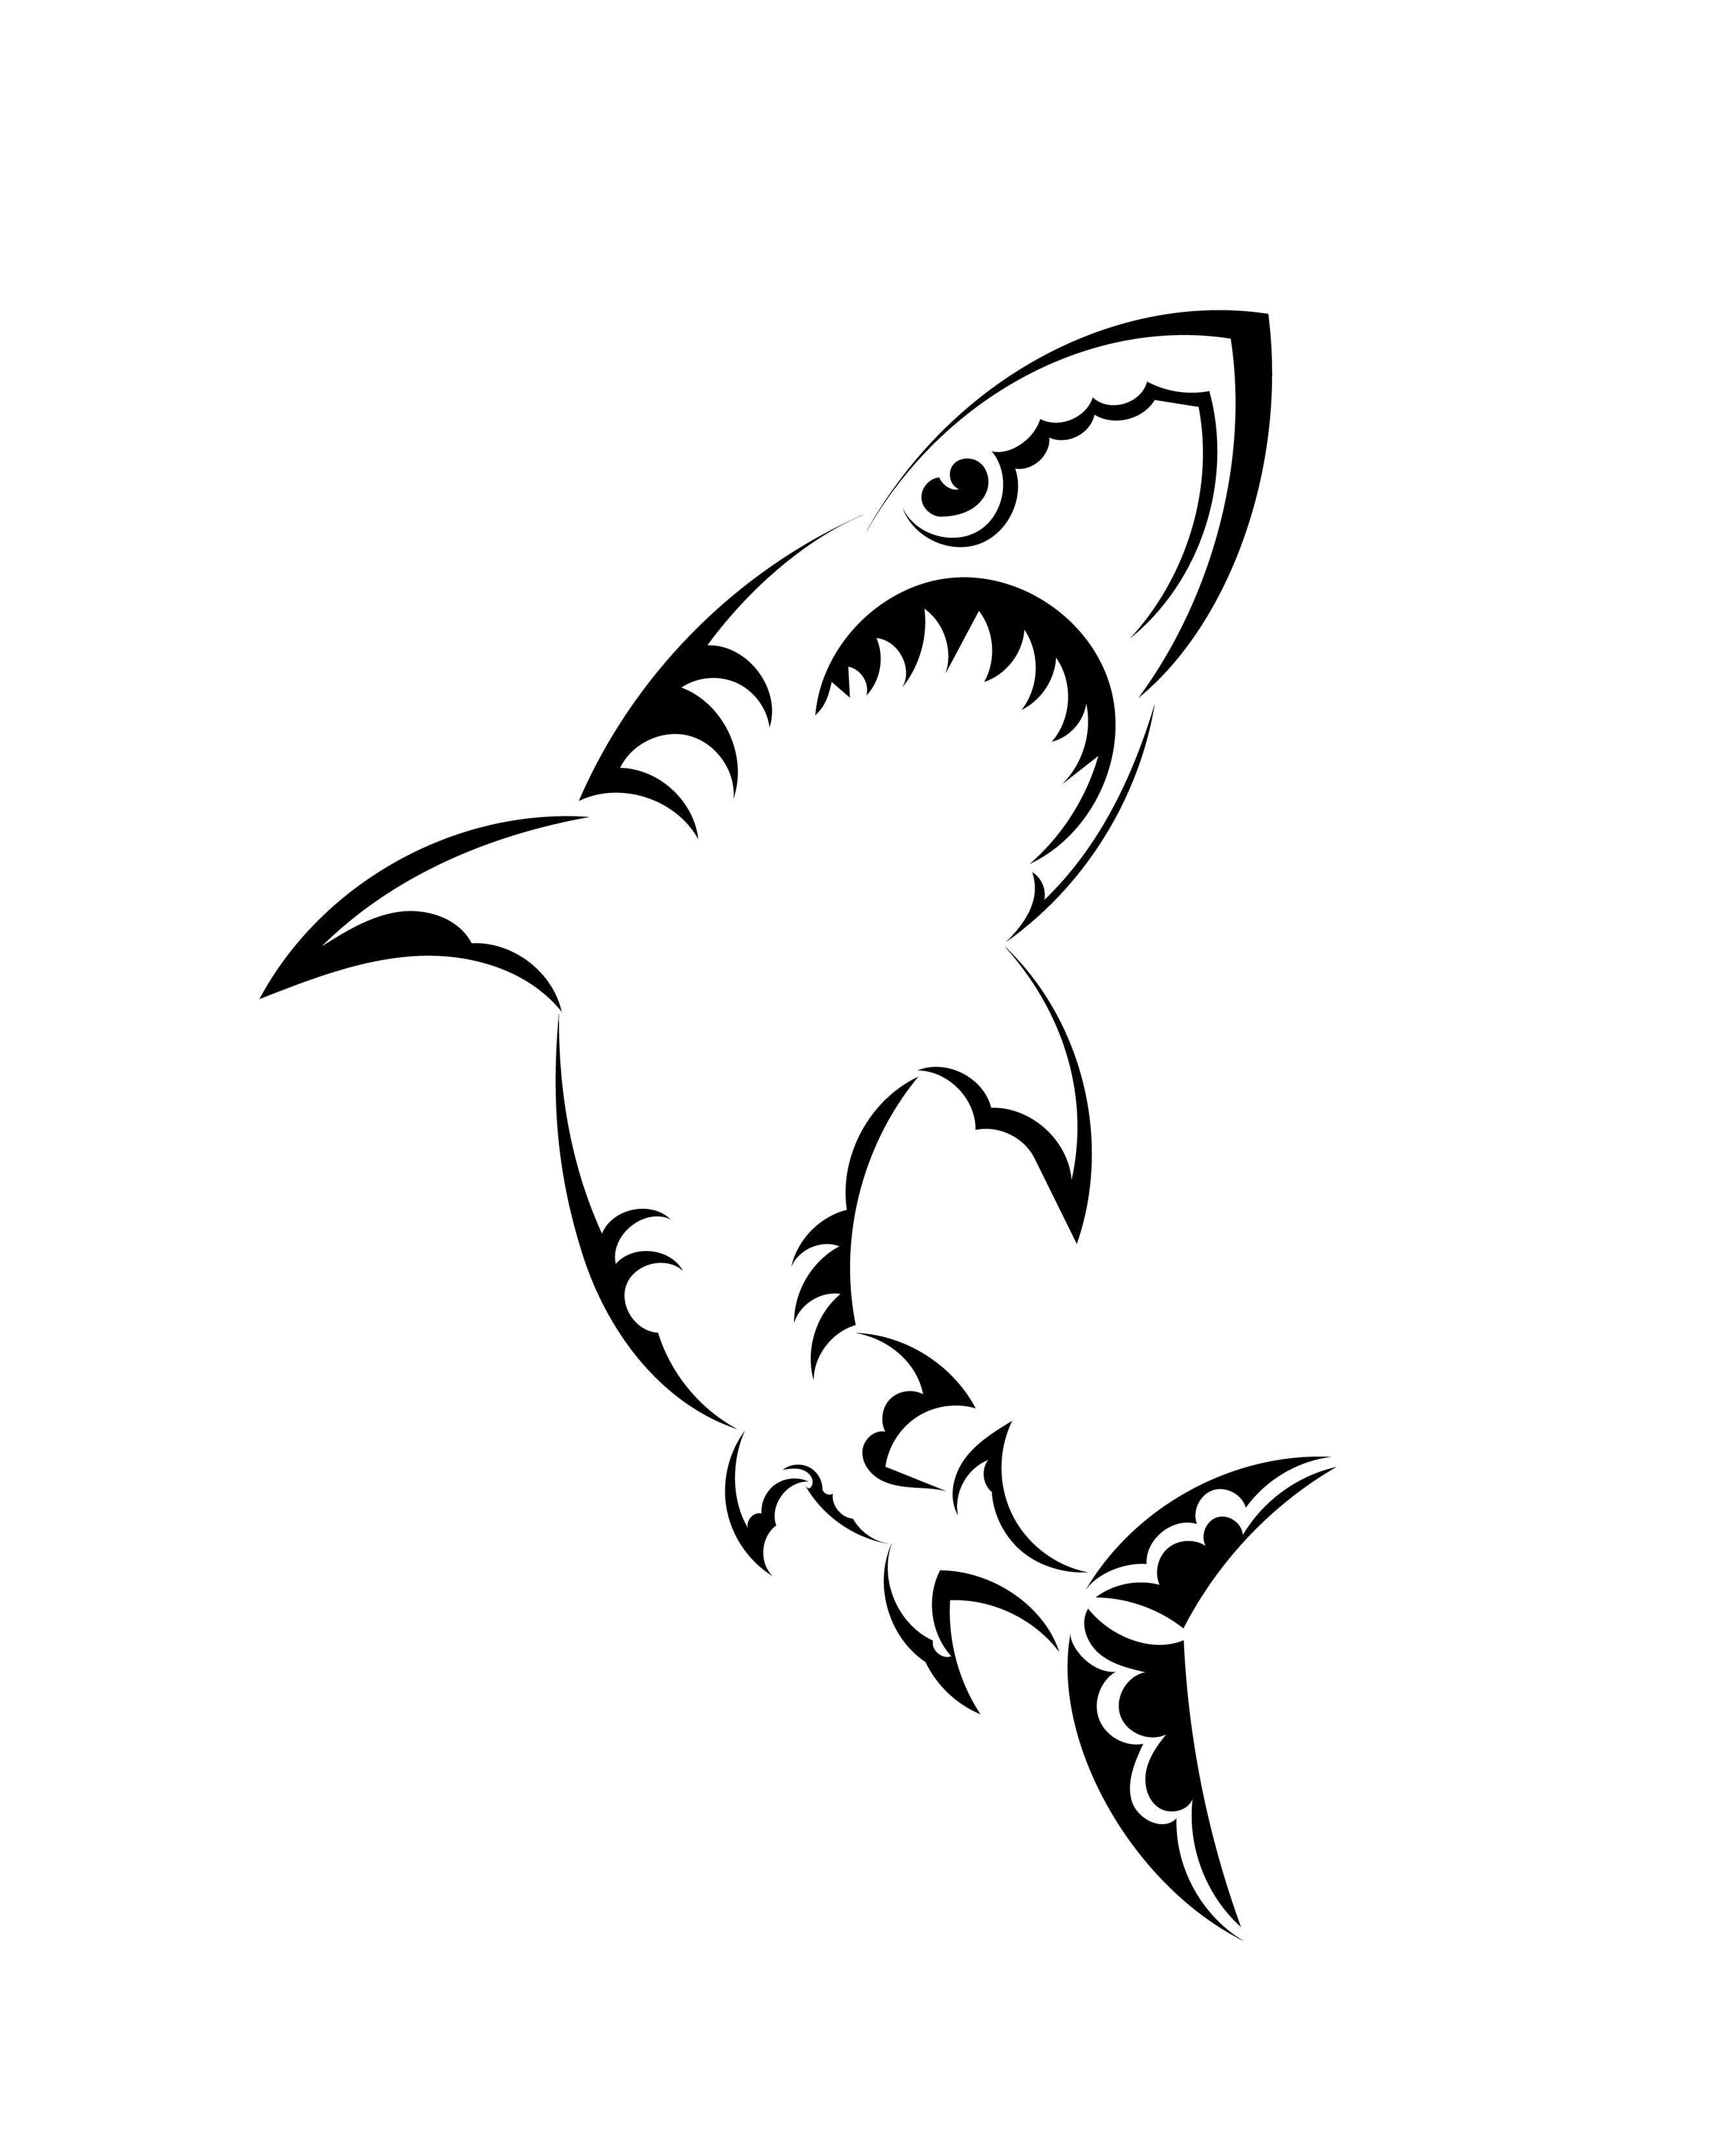 190 Silhouette Of Black Shark Tattoo Illustrations RoyaltyFree Vector  Graphics  Clip Art  iStock